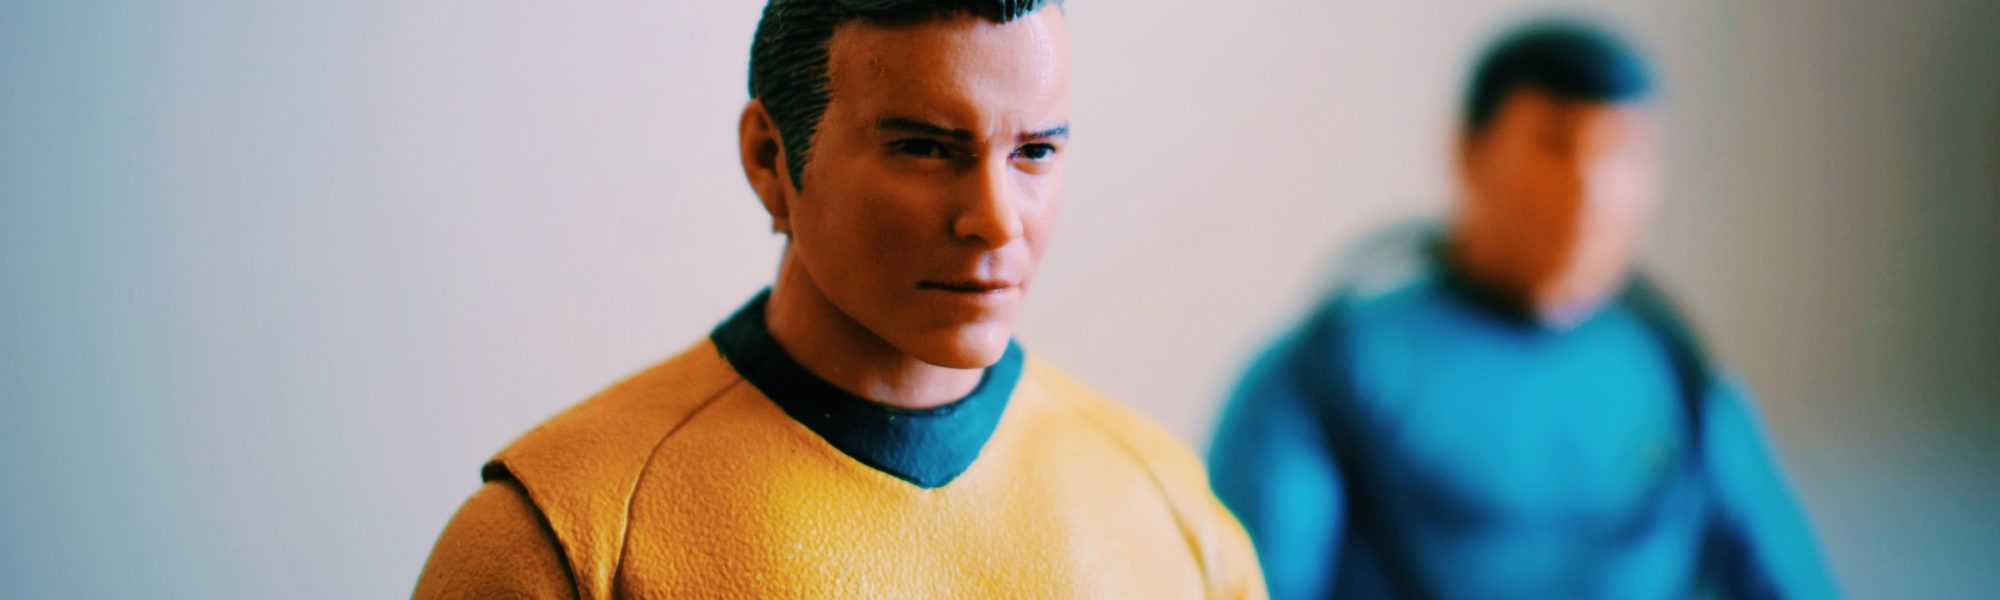 Star Trek action figure